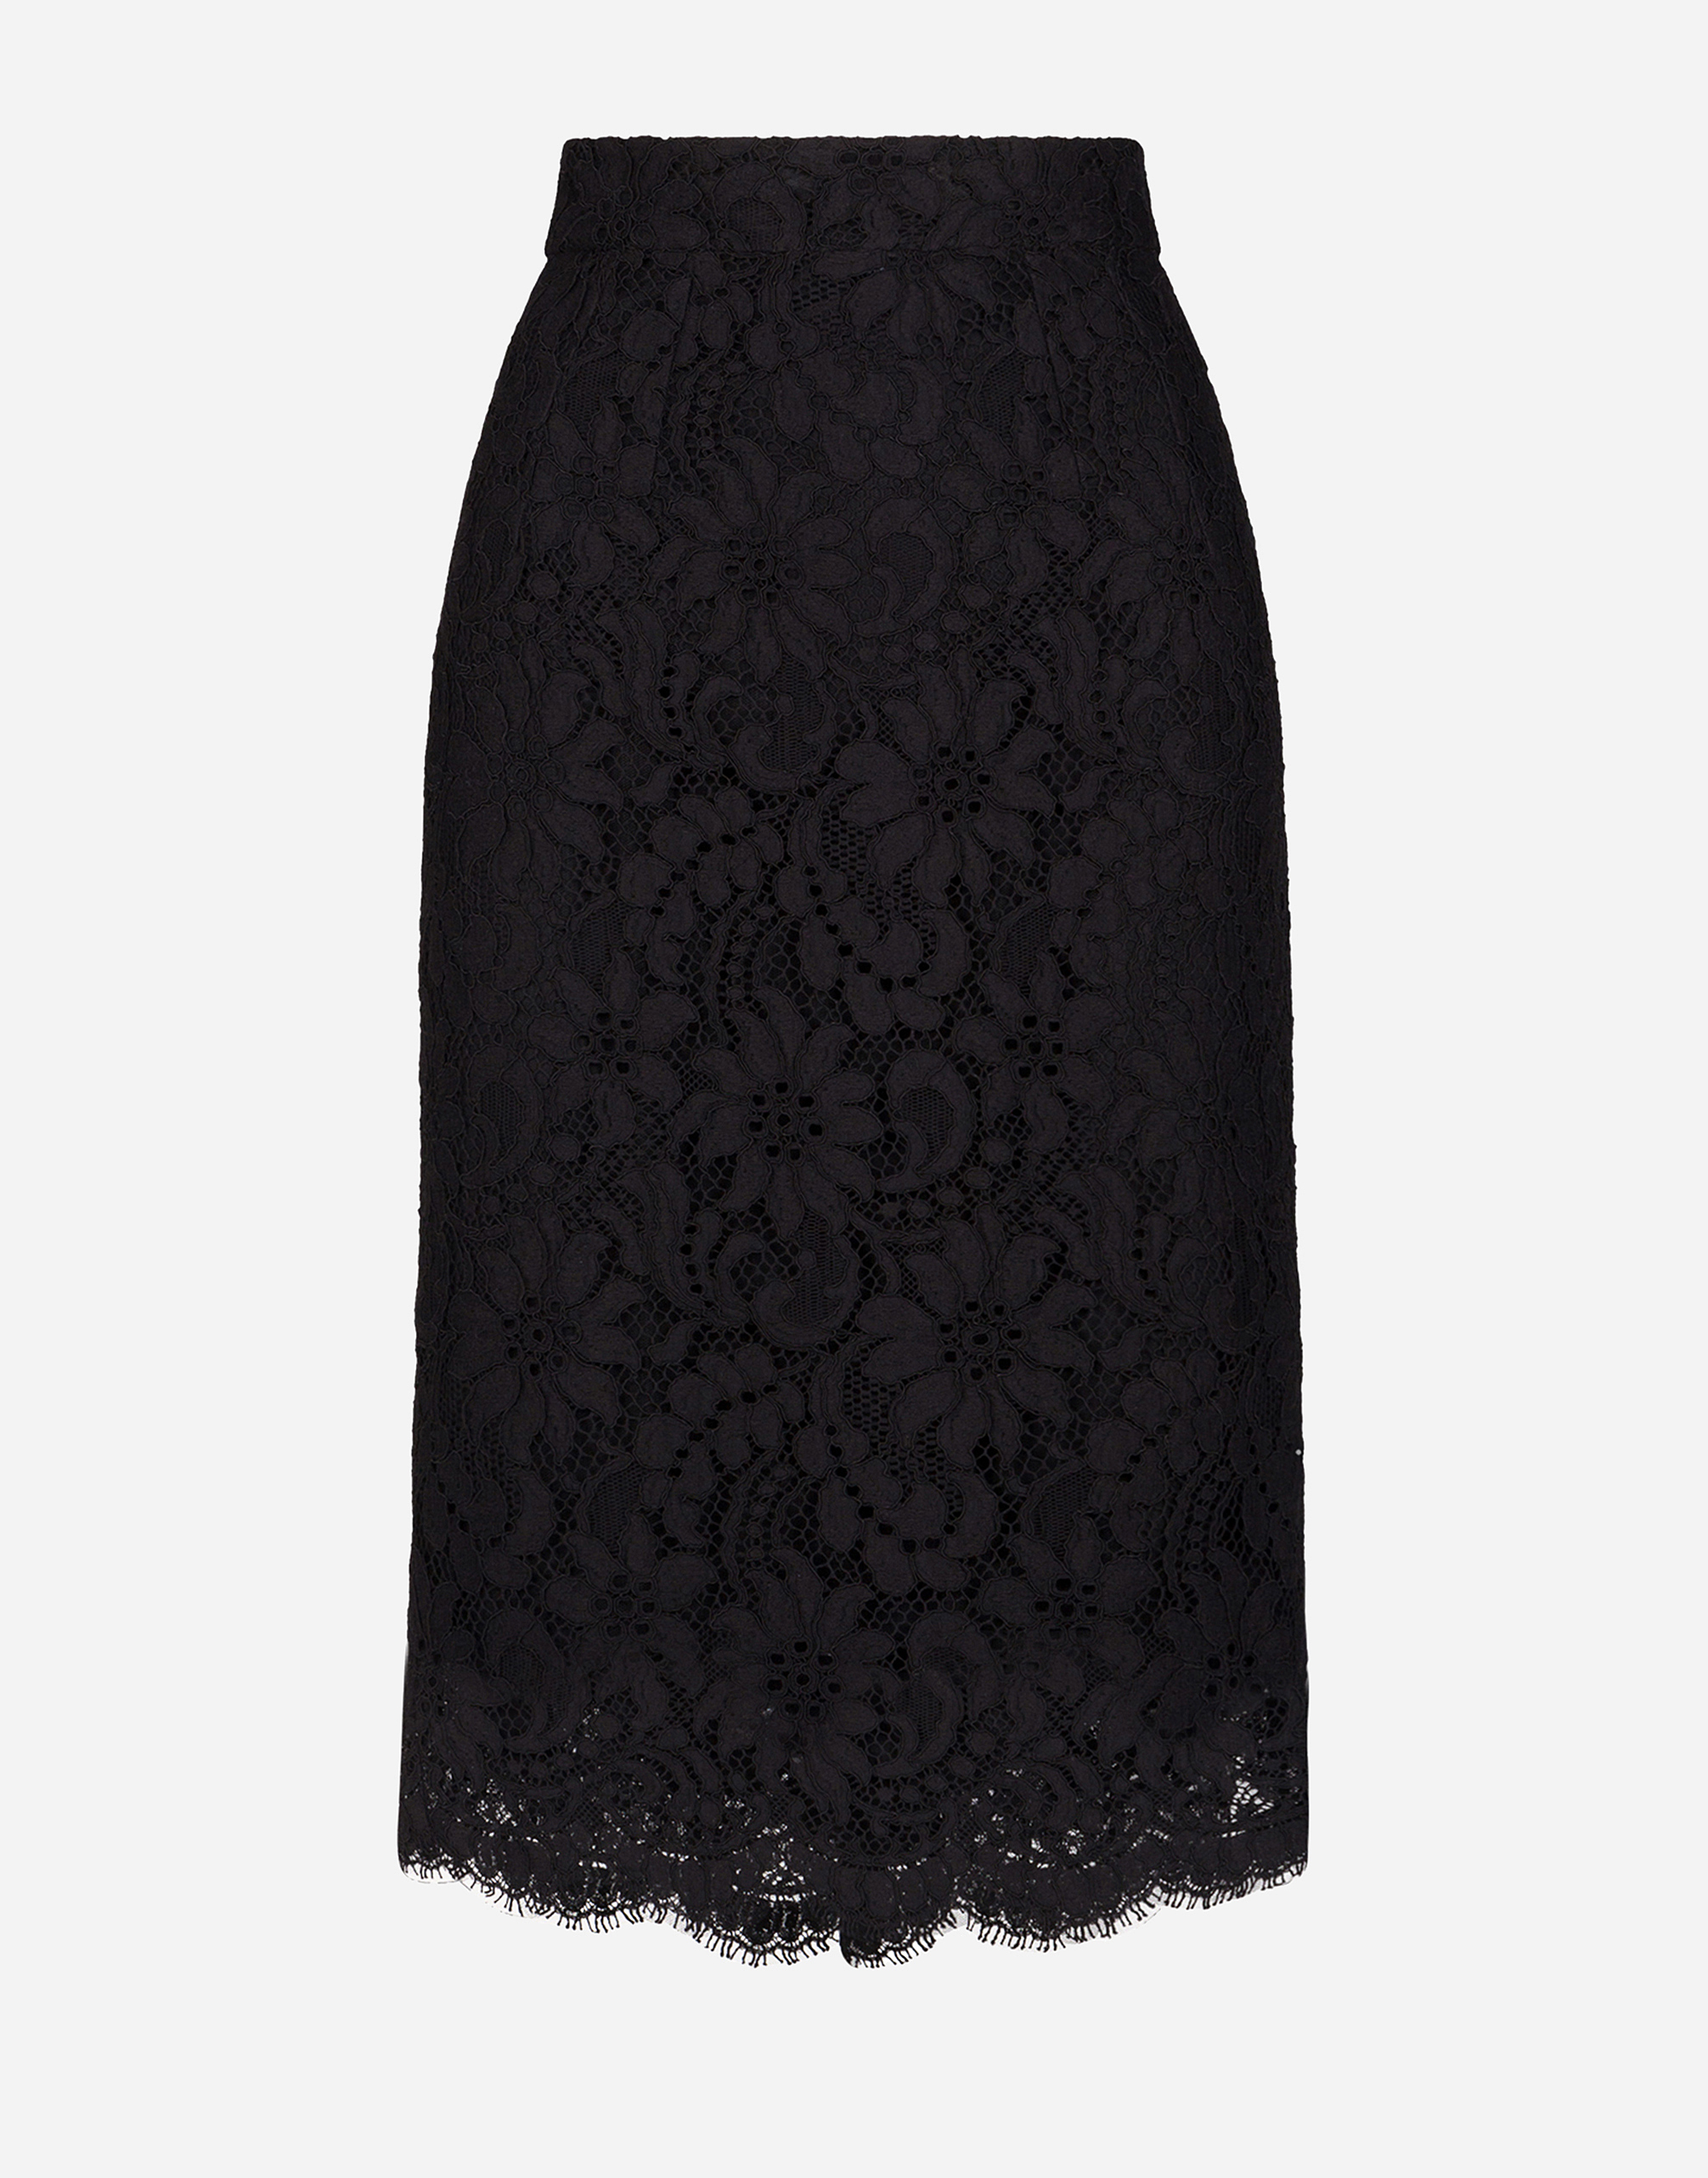 Lace midi skirt in Black